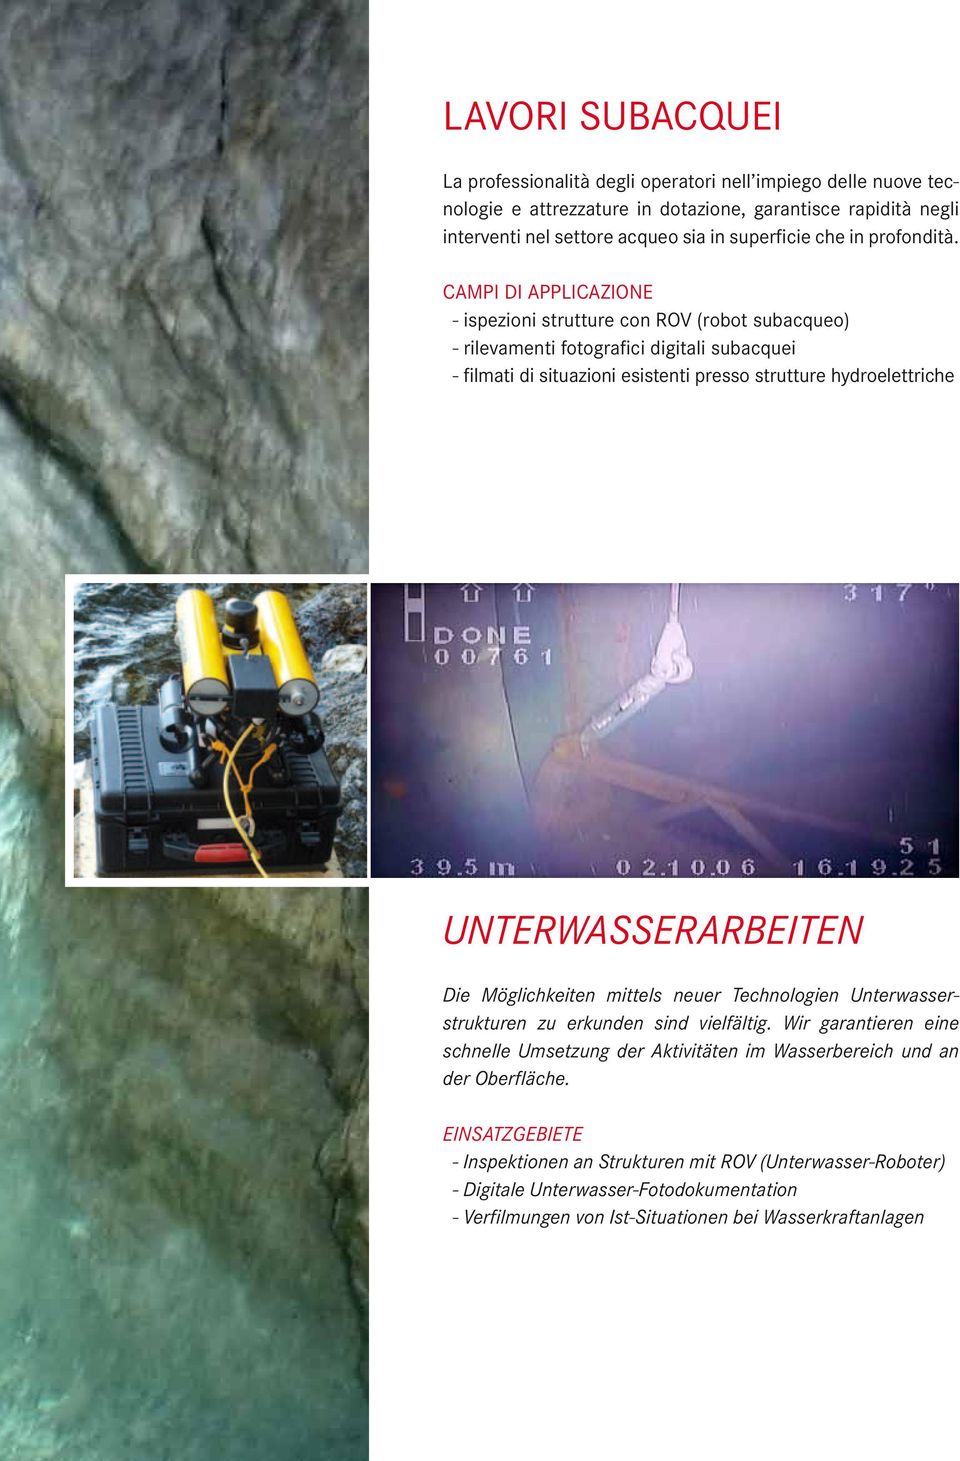 CAMPI DI APPLICAZIONE - ispezioni strutture con ROV (robot subacqueo) - rilevamenti fotografici digitali subacquei - filmati di situazioni esistenti presso strutture hydroelettriche